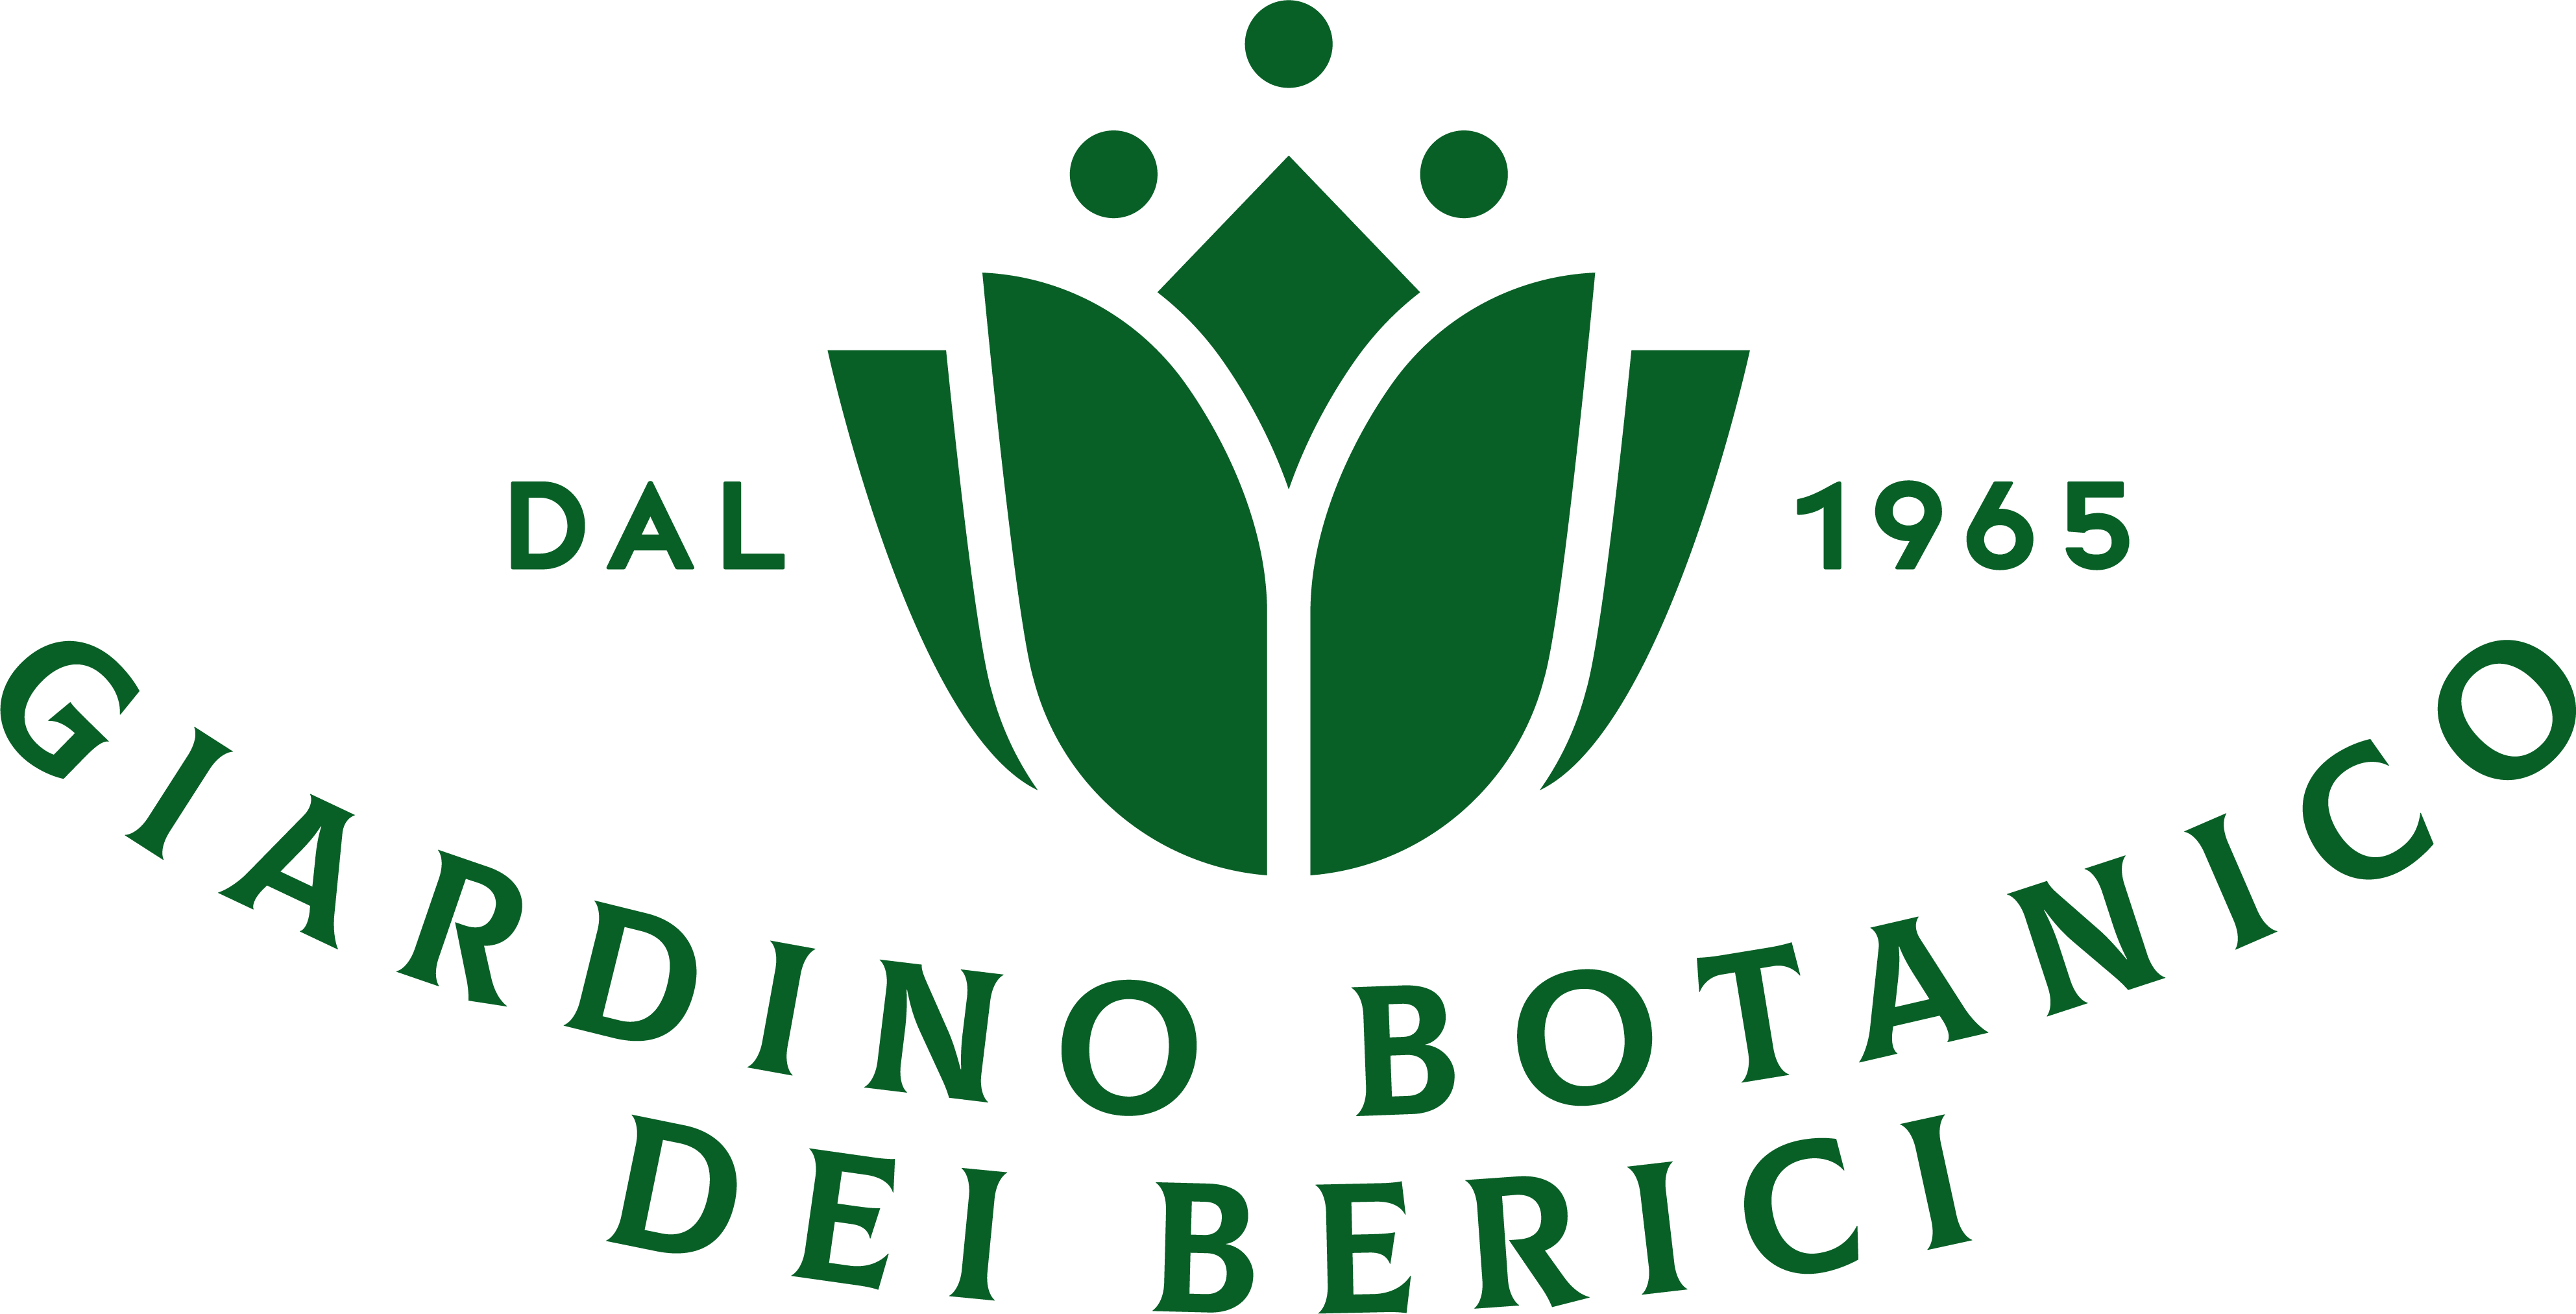 giardino botanico dei berici - logo